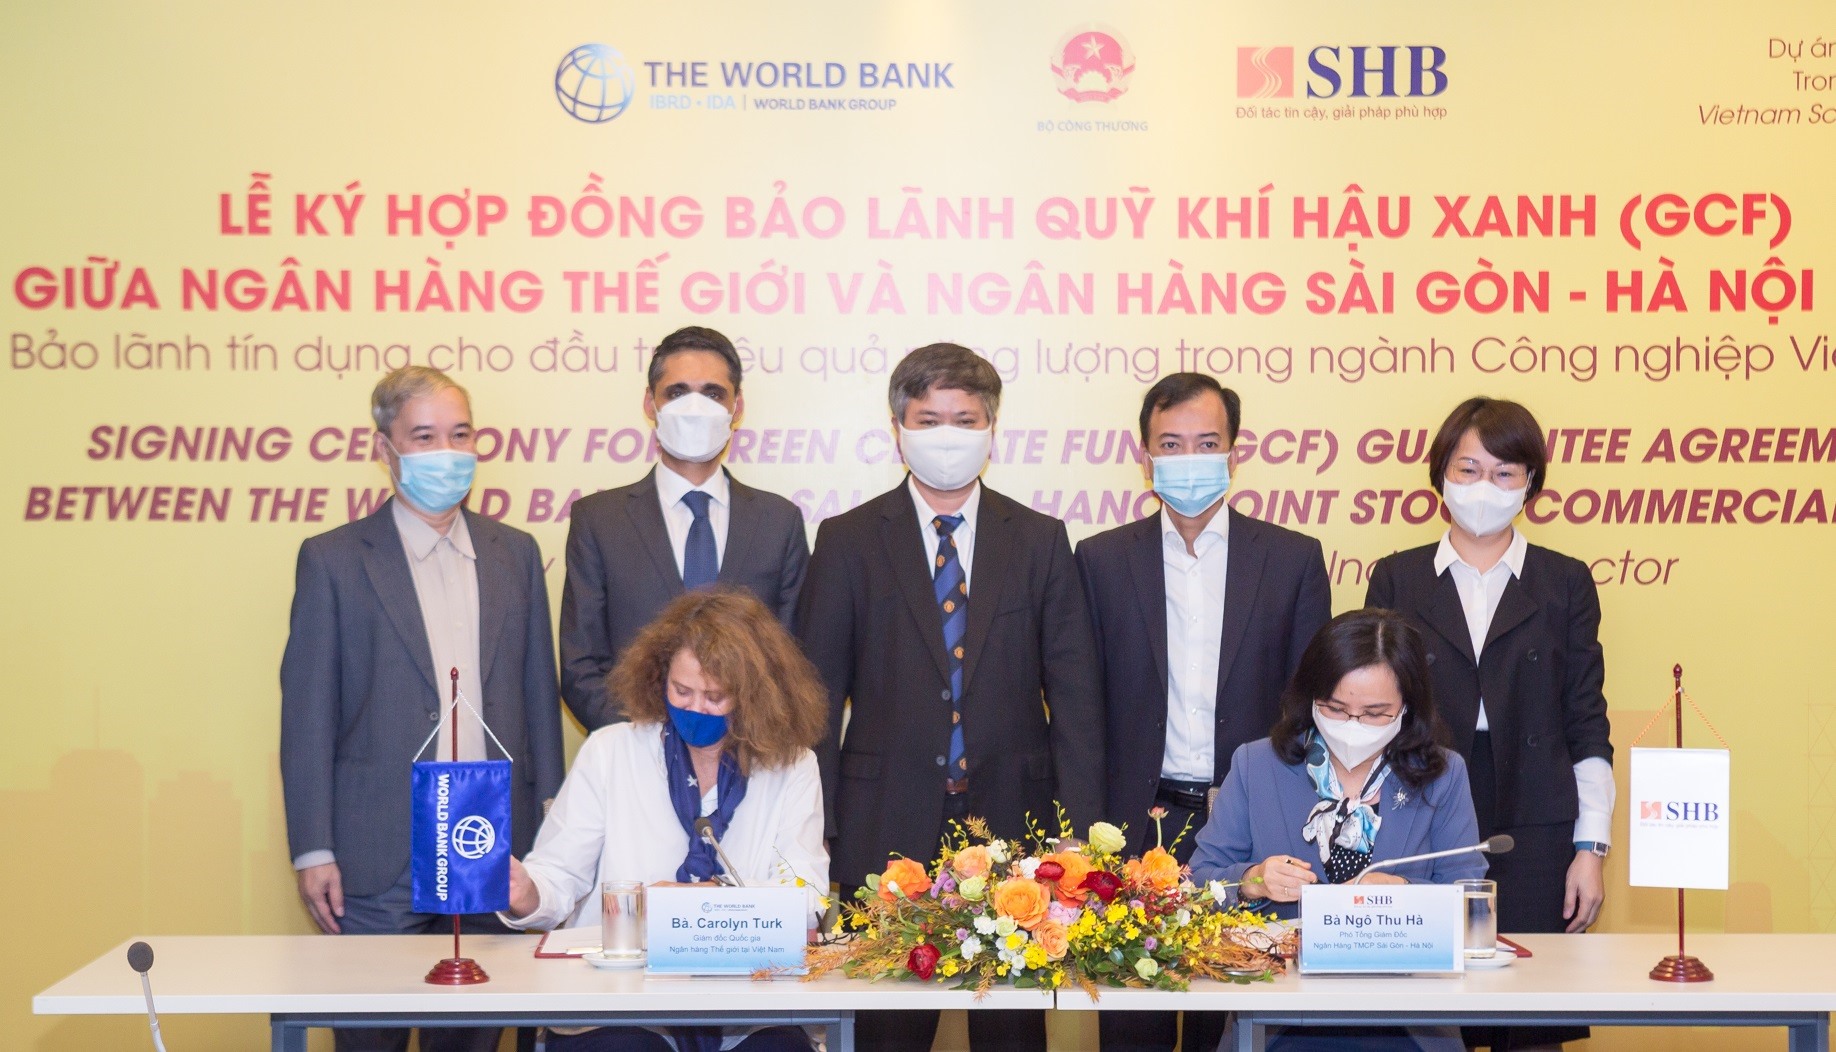 WB và SHB ký hợp đồng bảo lãnh Quỹ Khí hậu Xanh trong khuôn khổ Dự án Thúc đẩy tiết kiệm năng lượng trong các ngành Công nghiệp Việt Nam.